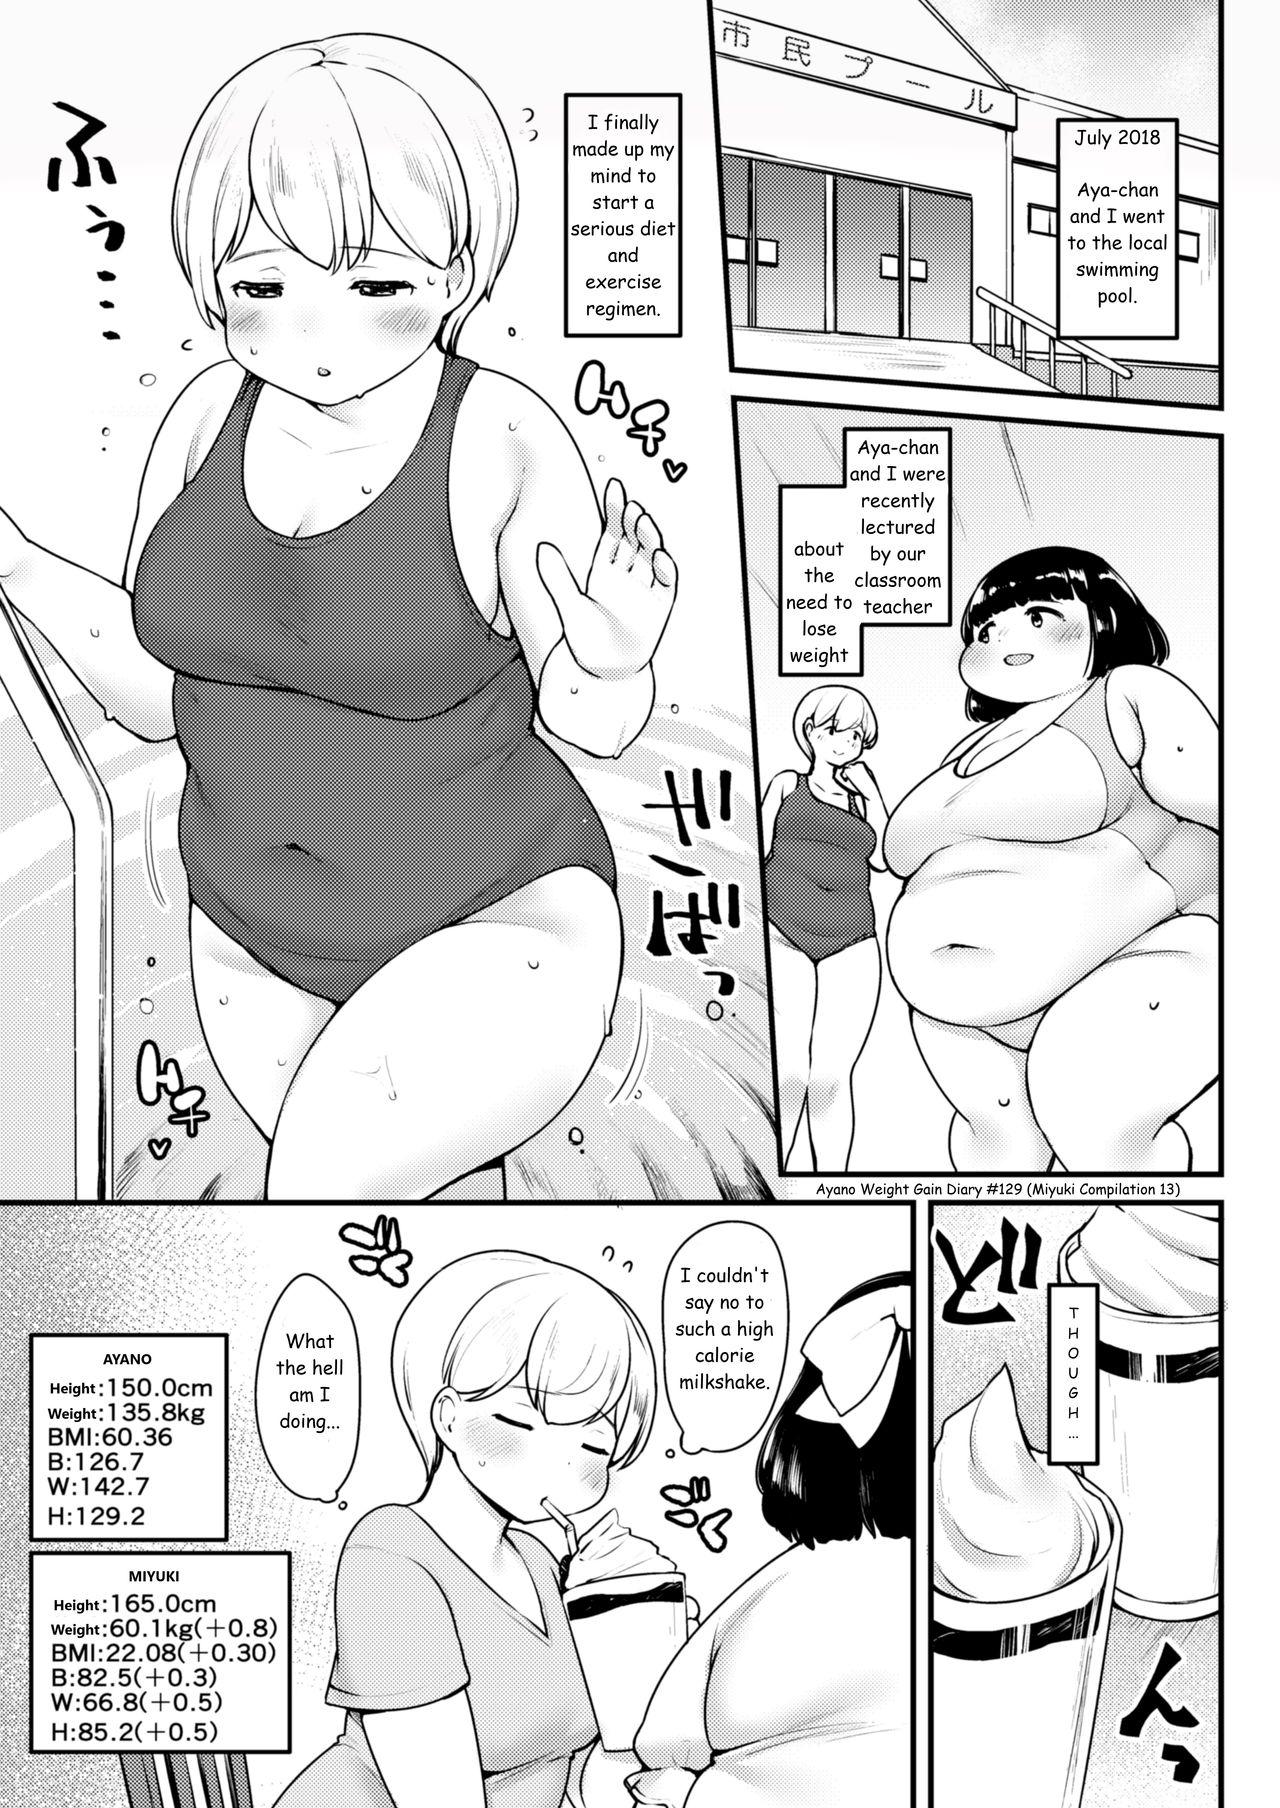 Ayano's Weight Gain Diary 129